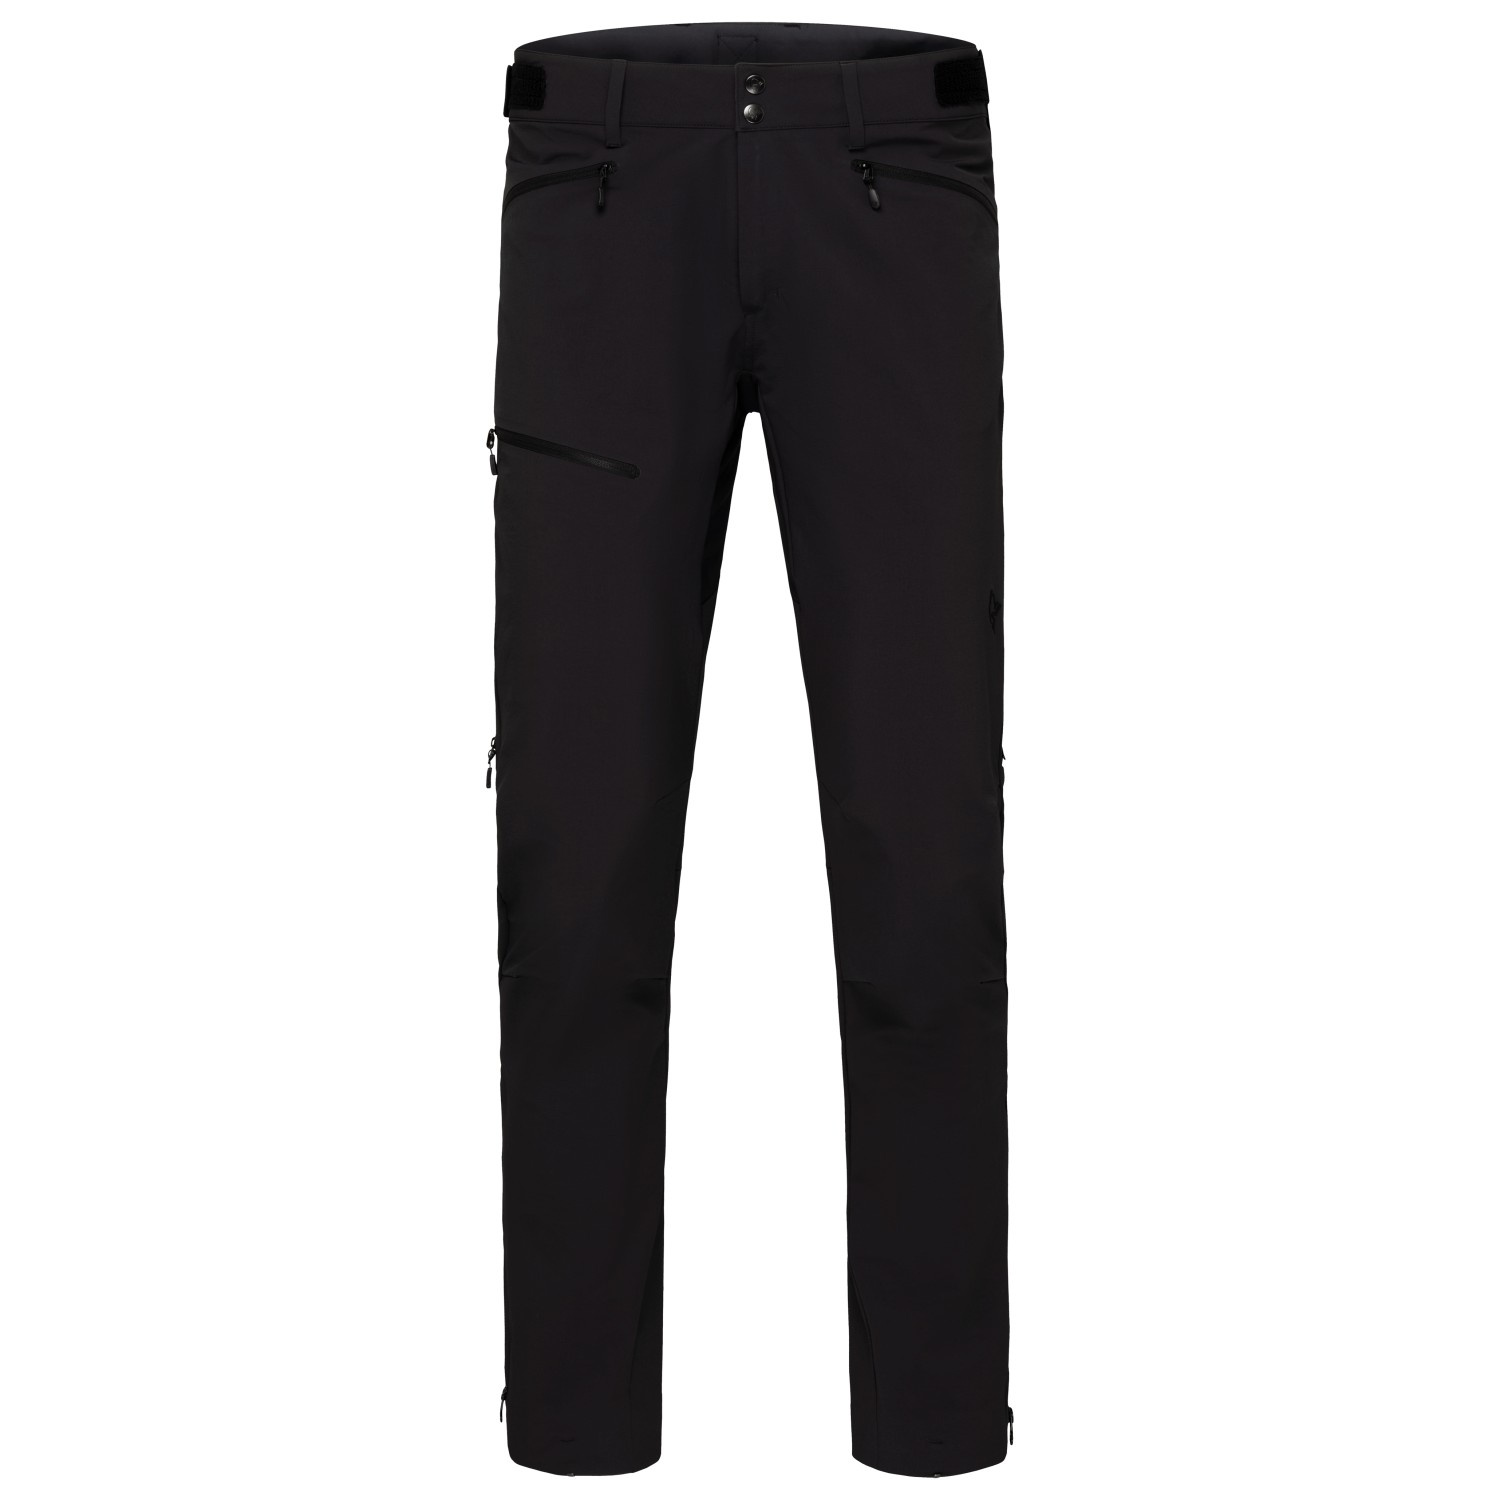 Трекинговые брюки Norrøna Falketind Flex1 Short, цвет Caviar шорты игрока hp tacks 9550 pants yt nv